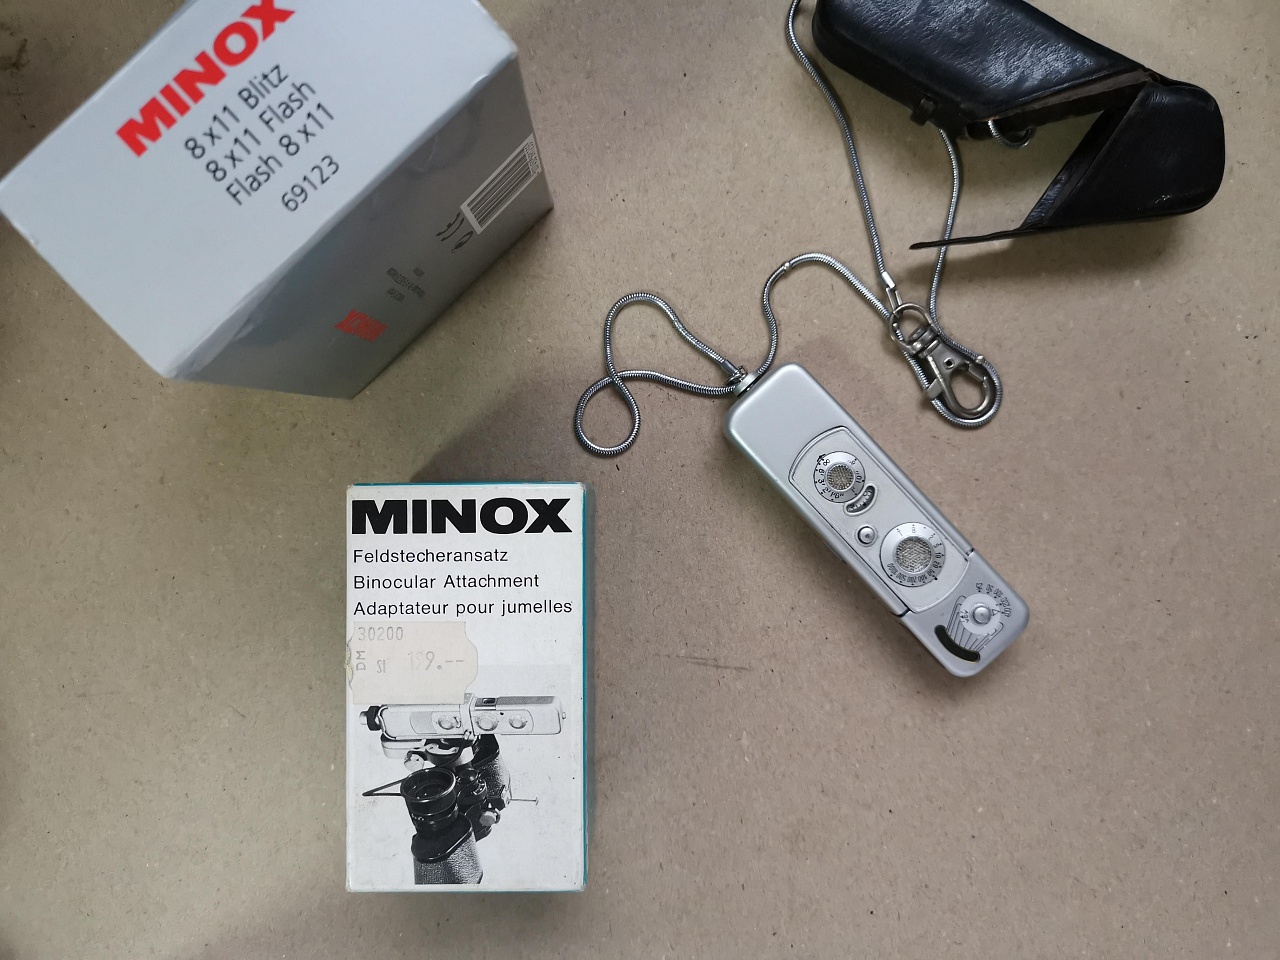 Камера minox b фото №2